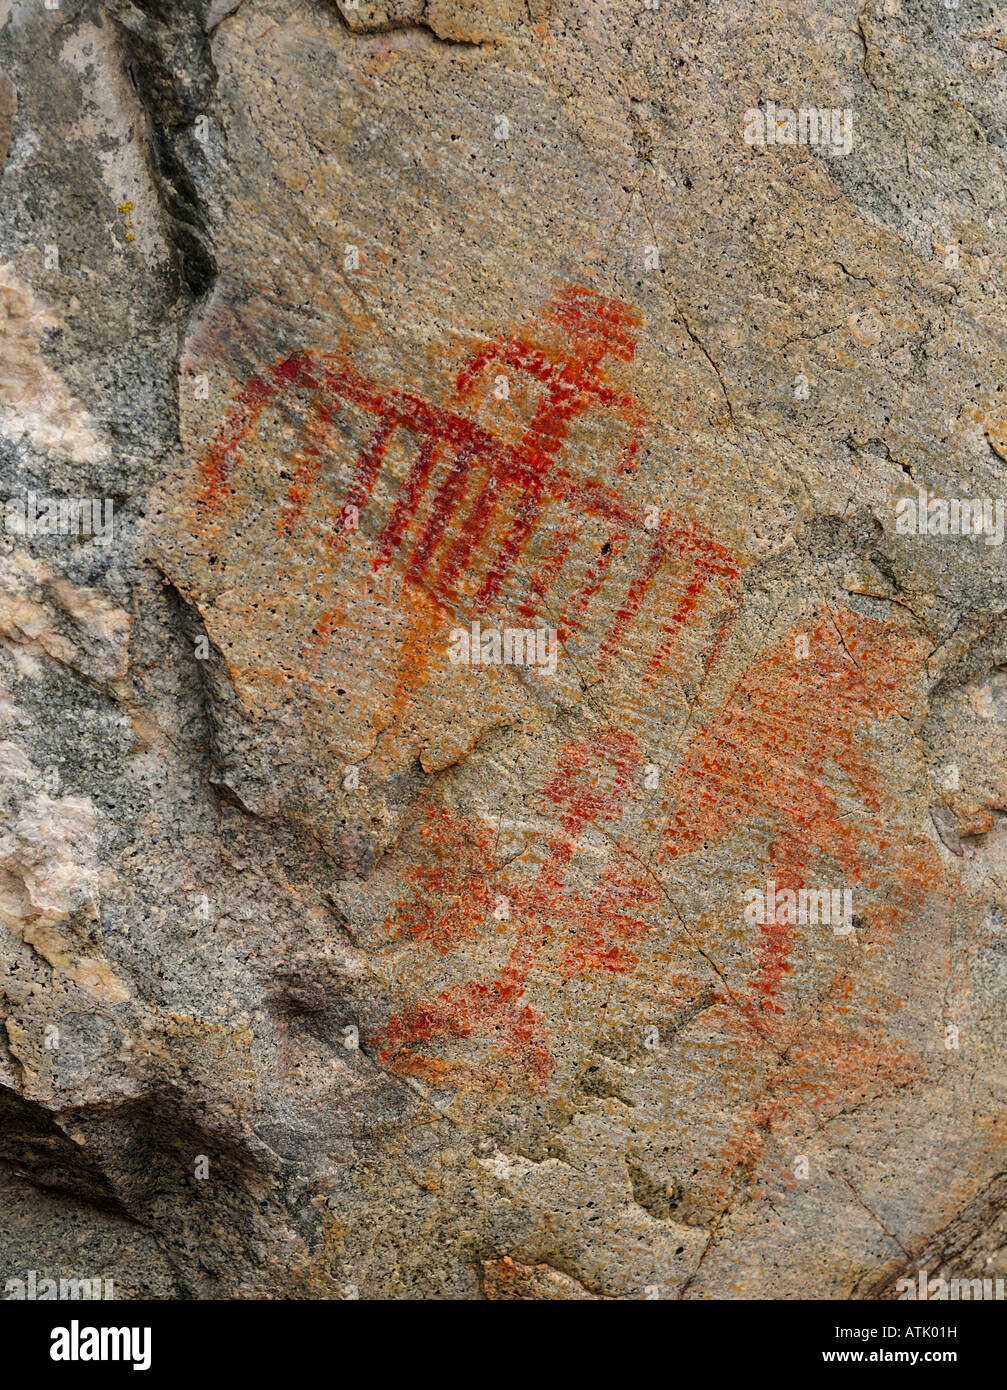 Le pictogramme (ancient art rupestre aborigène) près de Penticton, Colombie-Britannique, Canada Banque D'Images